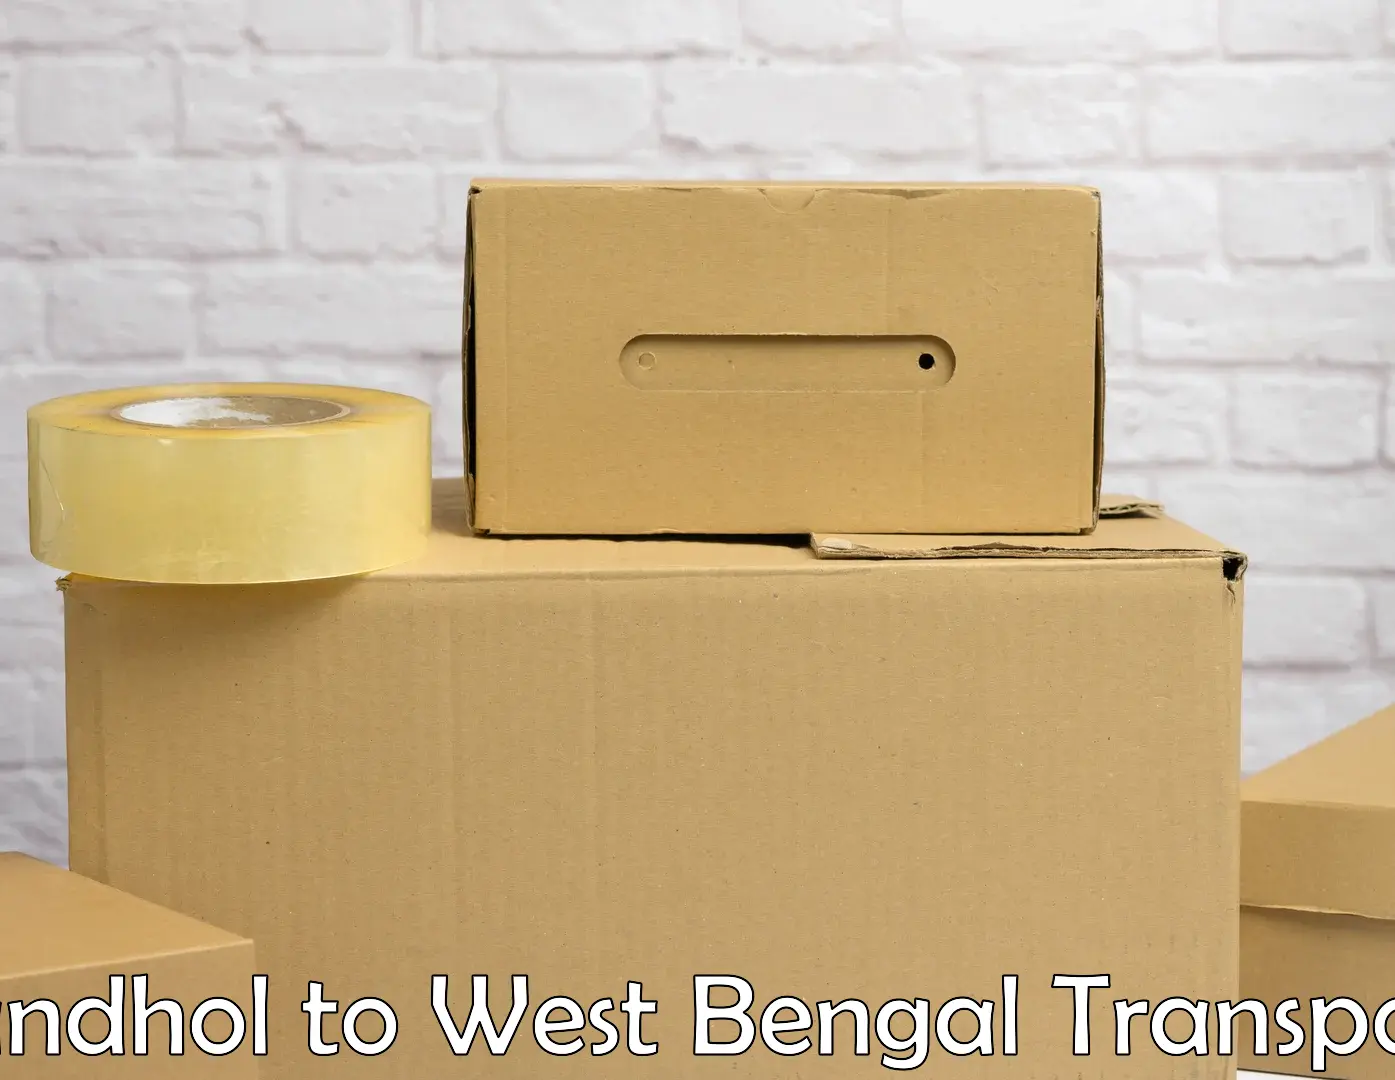 Commercial transport service Sandhol to Bishnupur